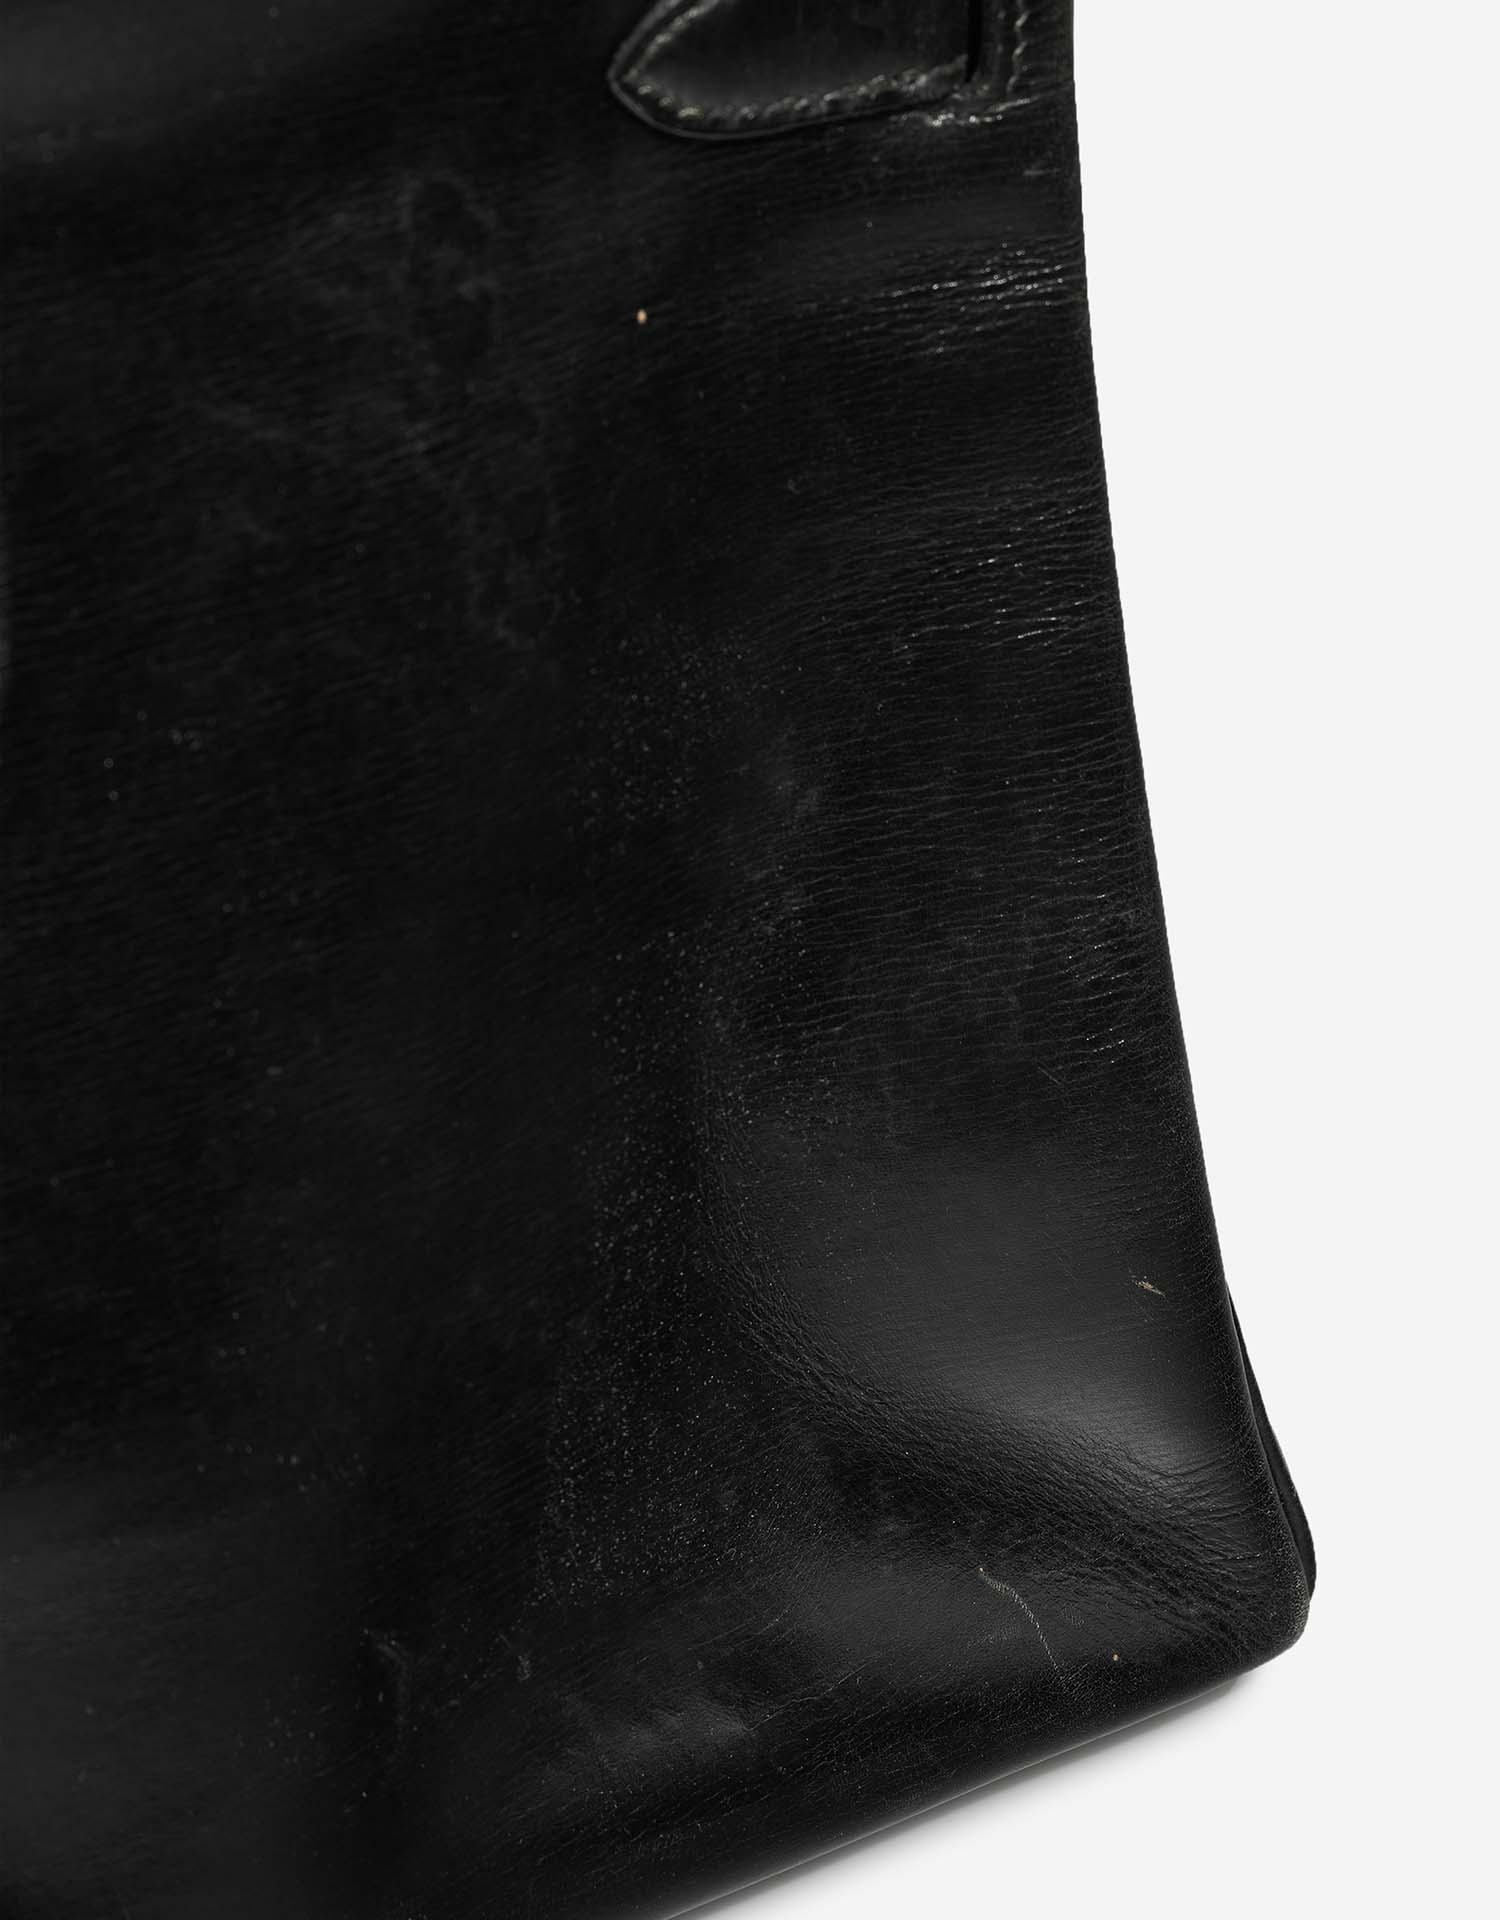 Hermès Kelly 32 Schwarz Gebrauchsspuren| Verkaufen Sie Ihre Designertasche auf Saclab.com